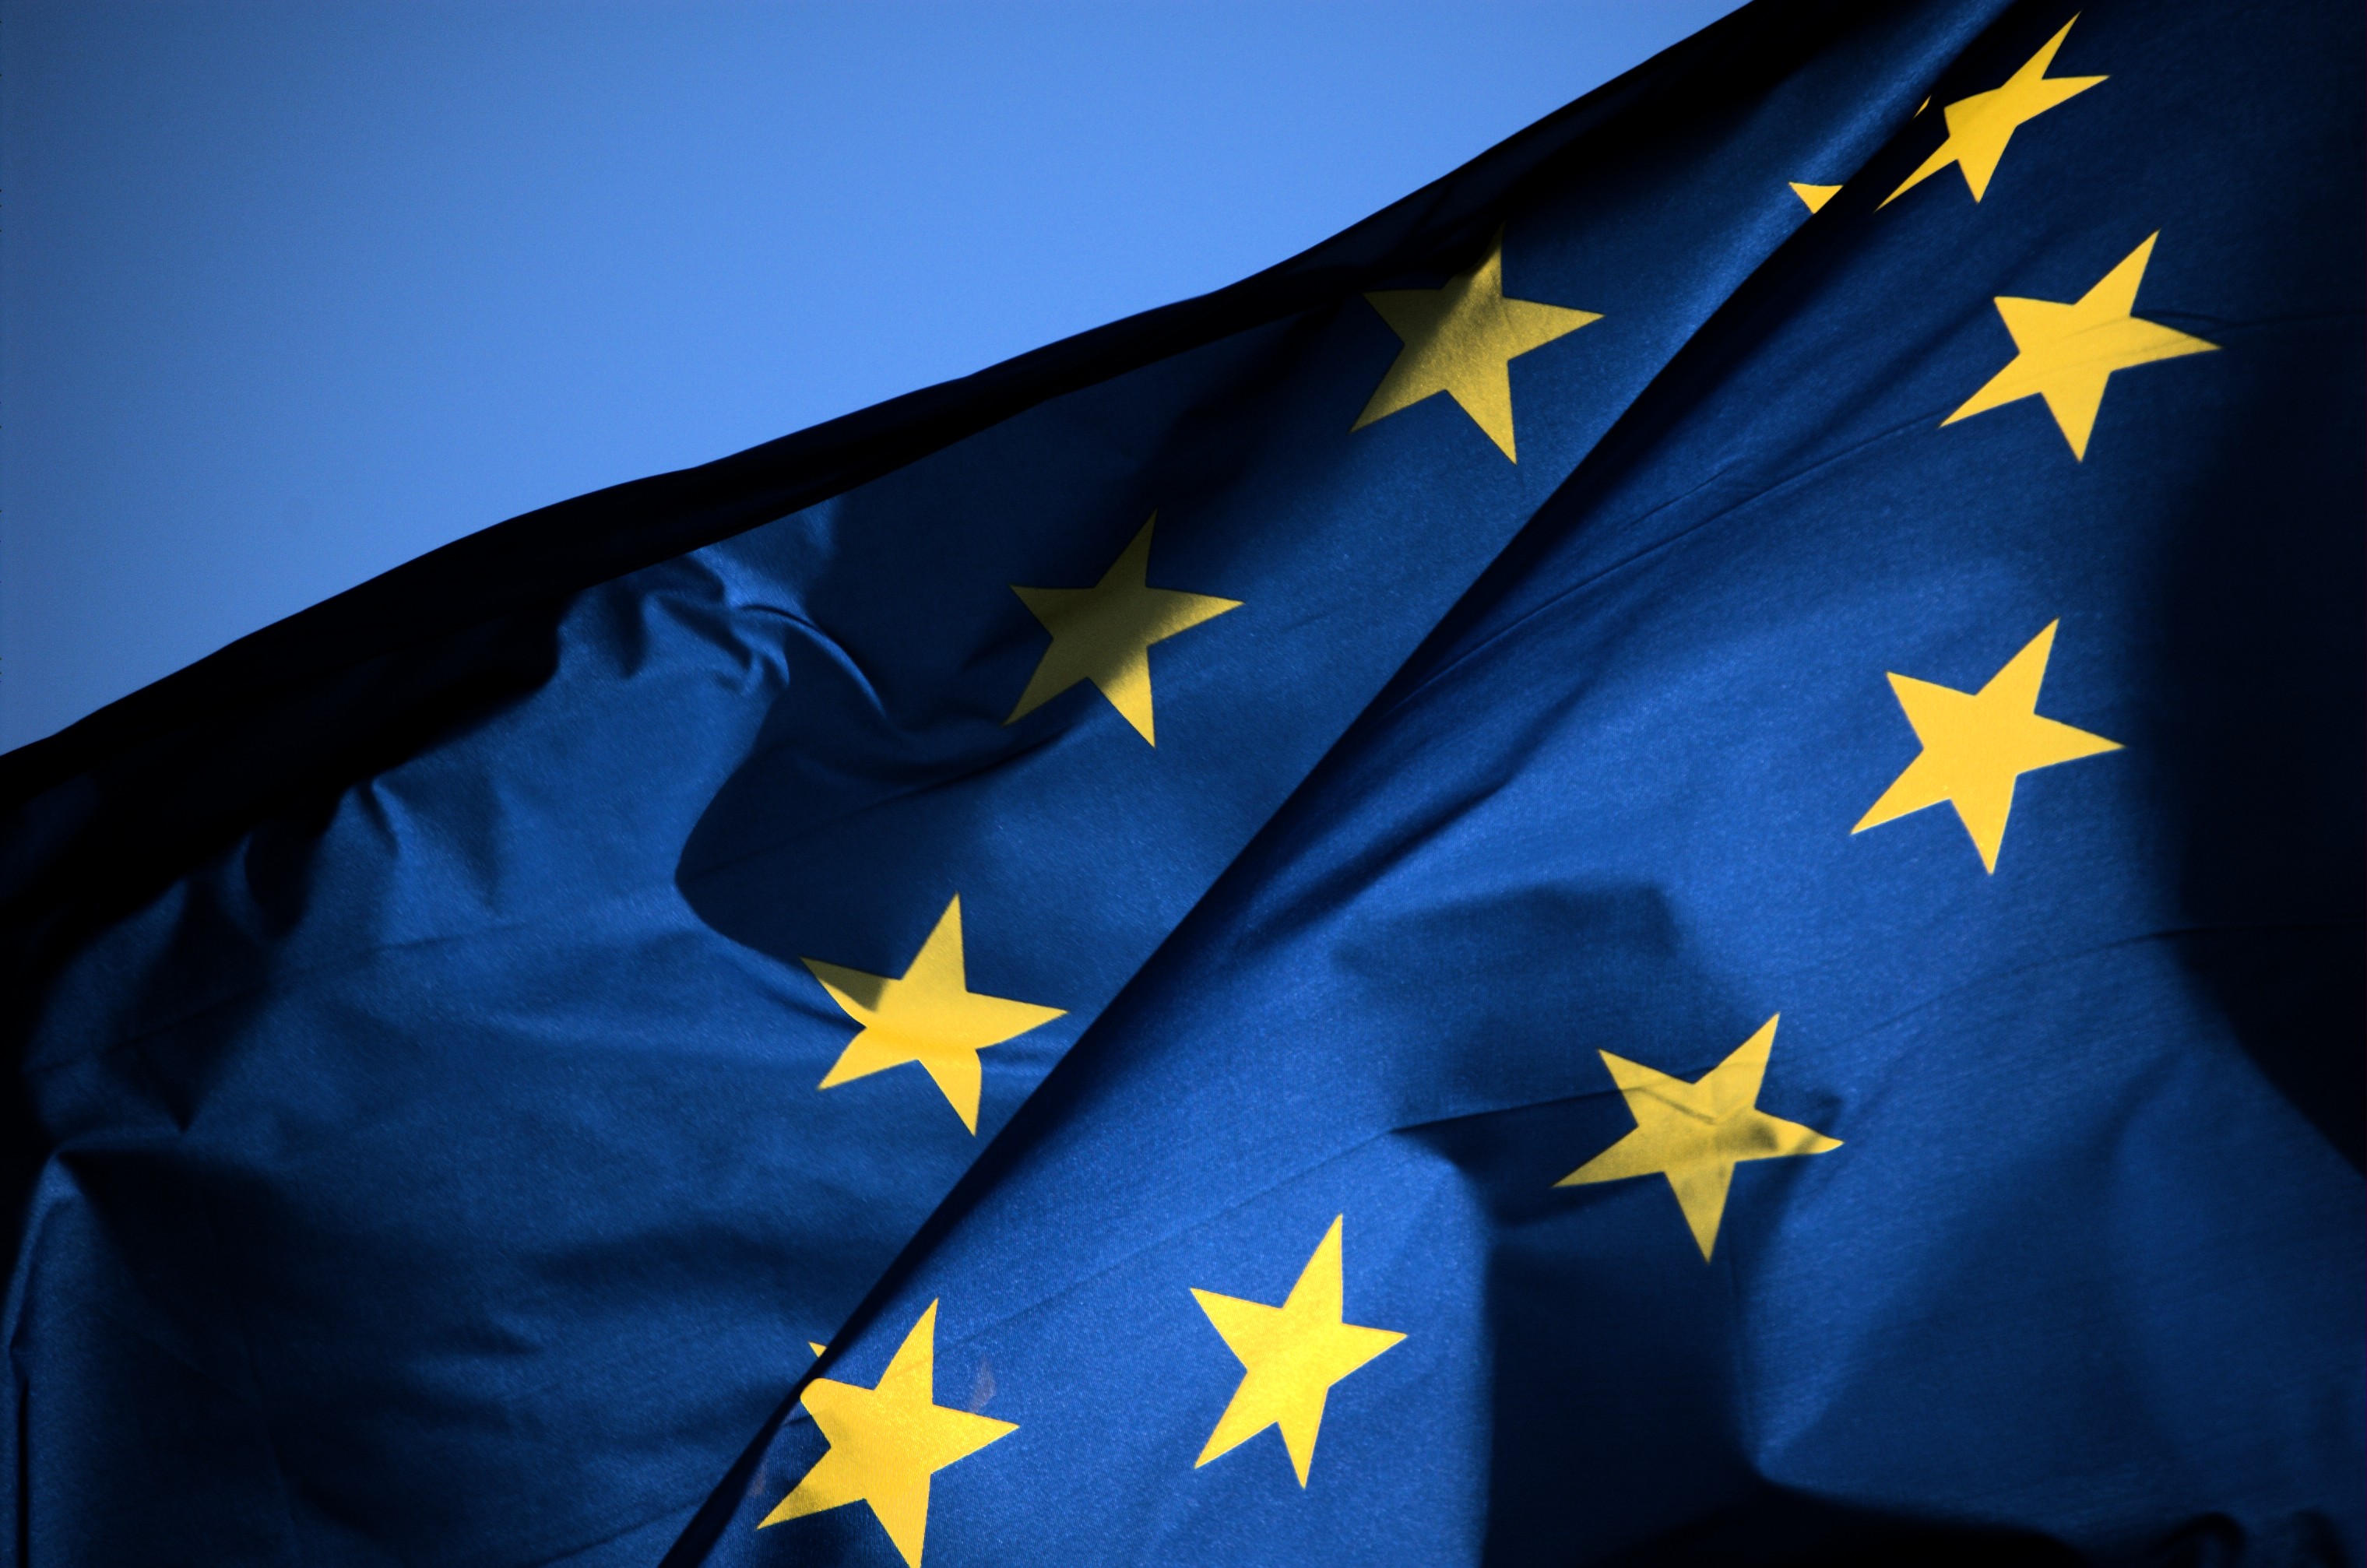 Ευρωβαρόμετρο: Η ύφεση μειώνει την εμπιστοσύνη στον ευρωπαϊσμό